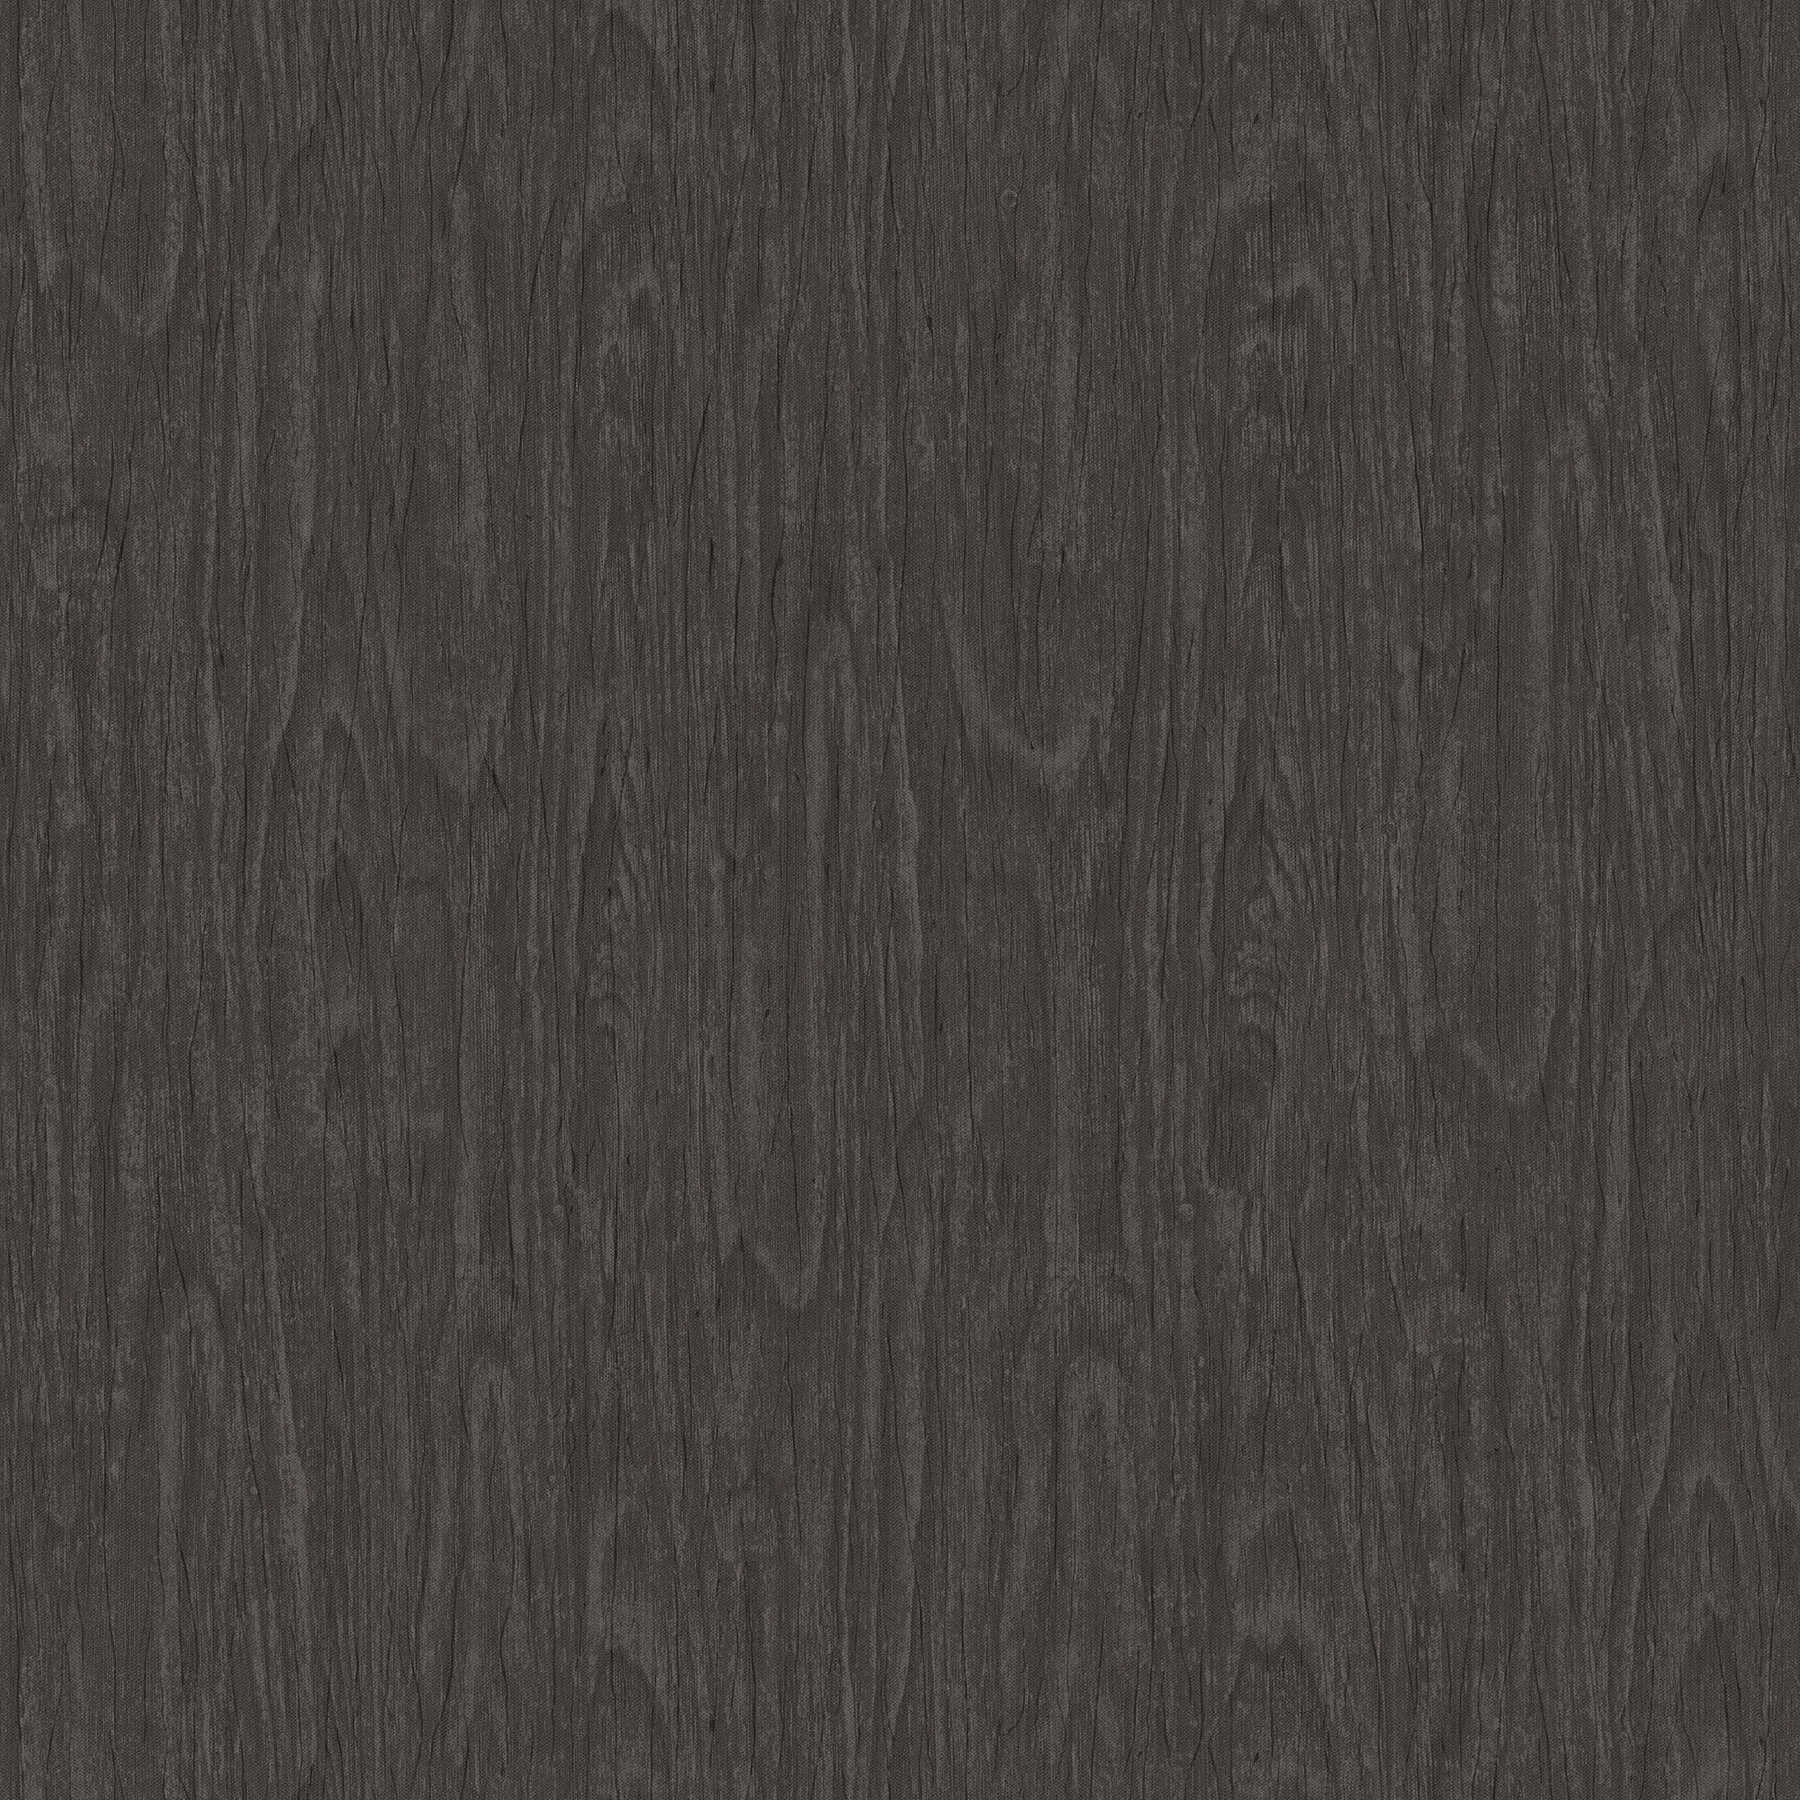 VERSACE Home Papier peint aspect bois réaliste - gris, noir
